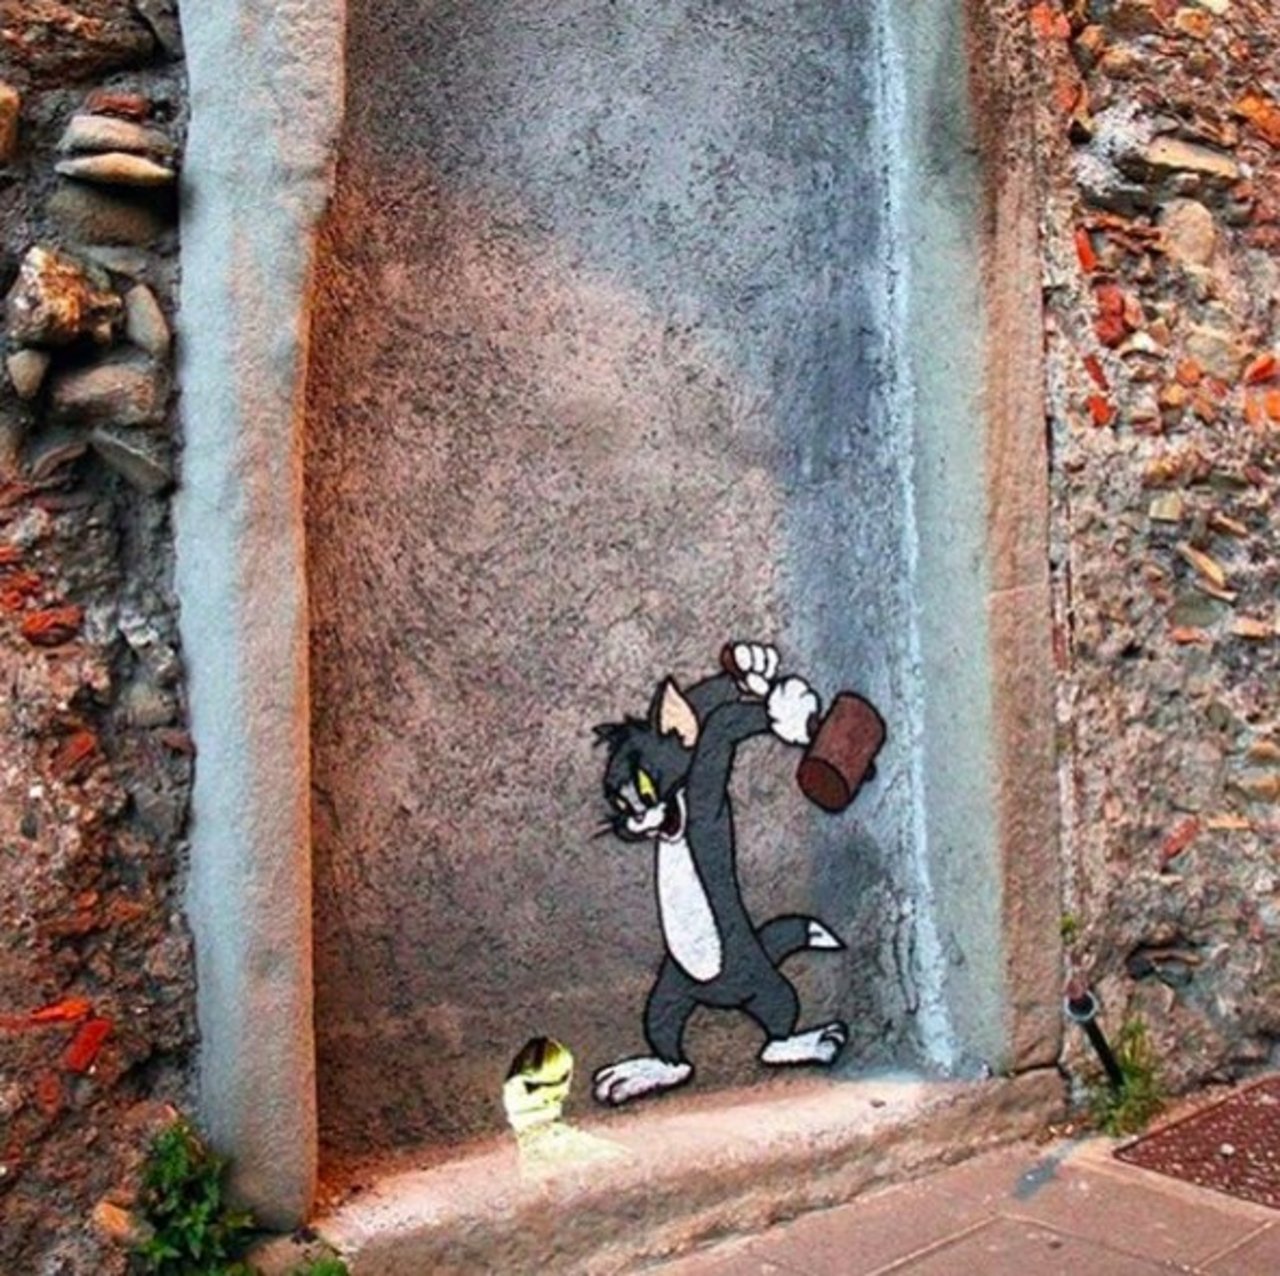 Tom from 'Tom and Jerry' in #Sicily, by Slava Ptrk (http://globalstreetart.com/slavaptrk). -- #globalstreetart #streetart #graffiti https://t.co/HSk8hDXKzy